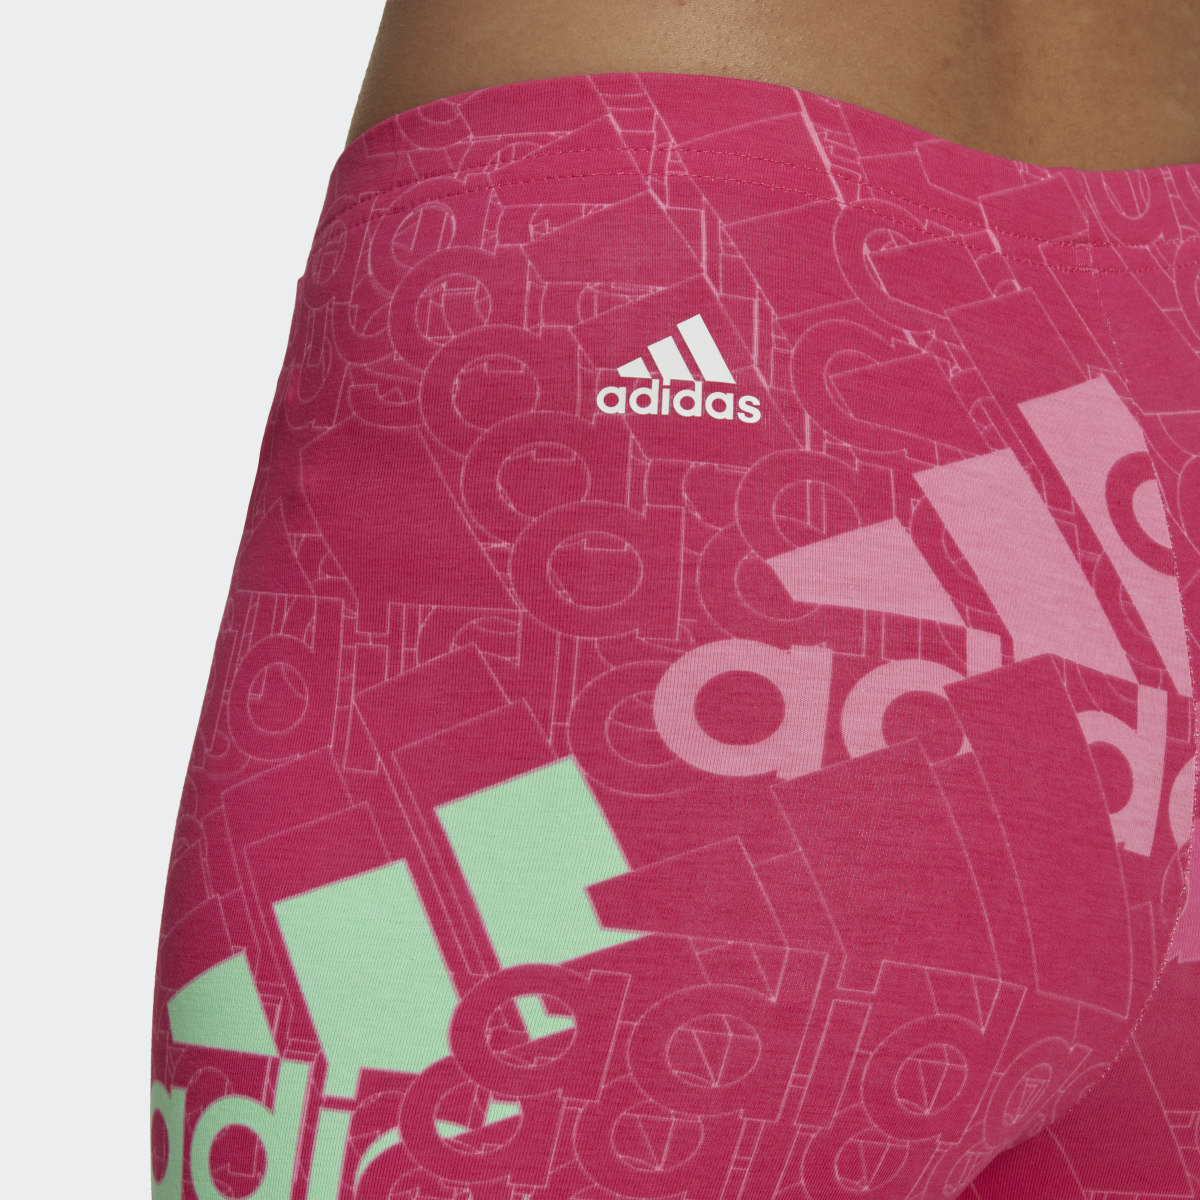 Adidas Essentials Multi-Colored Logo Leggings. 5